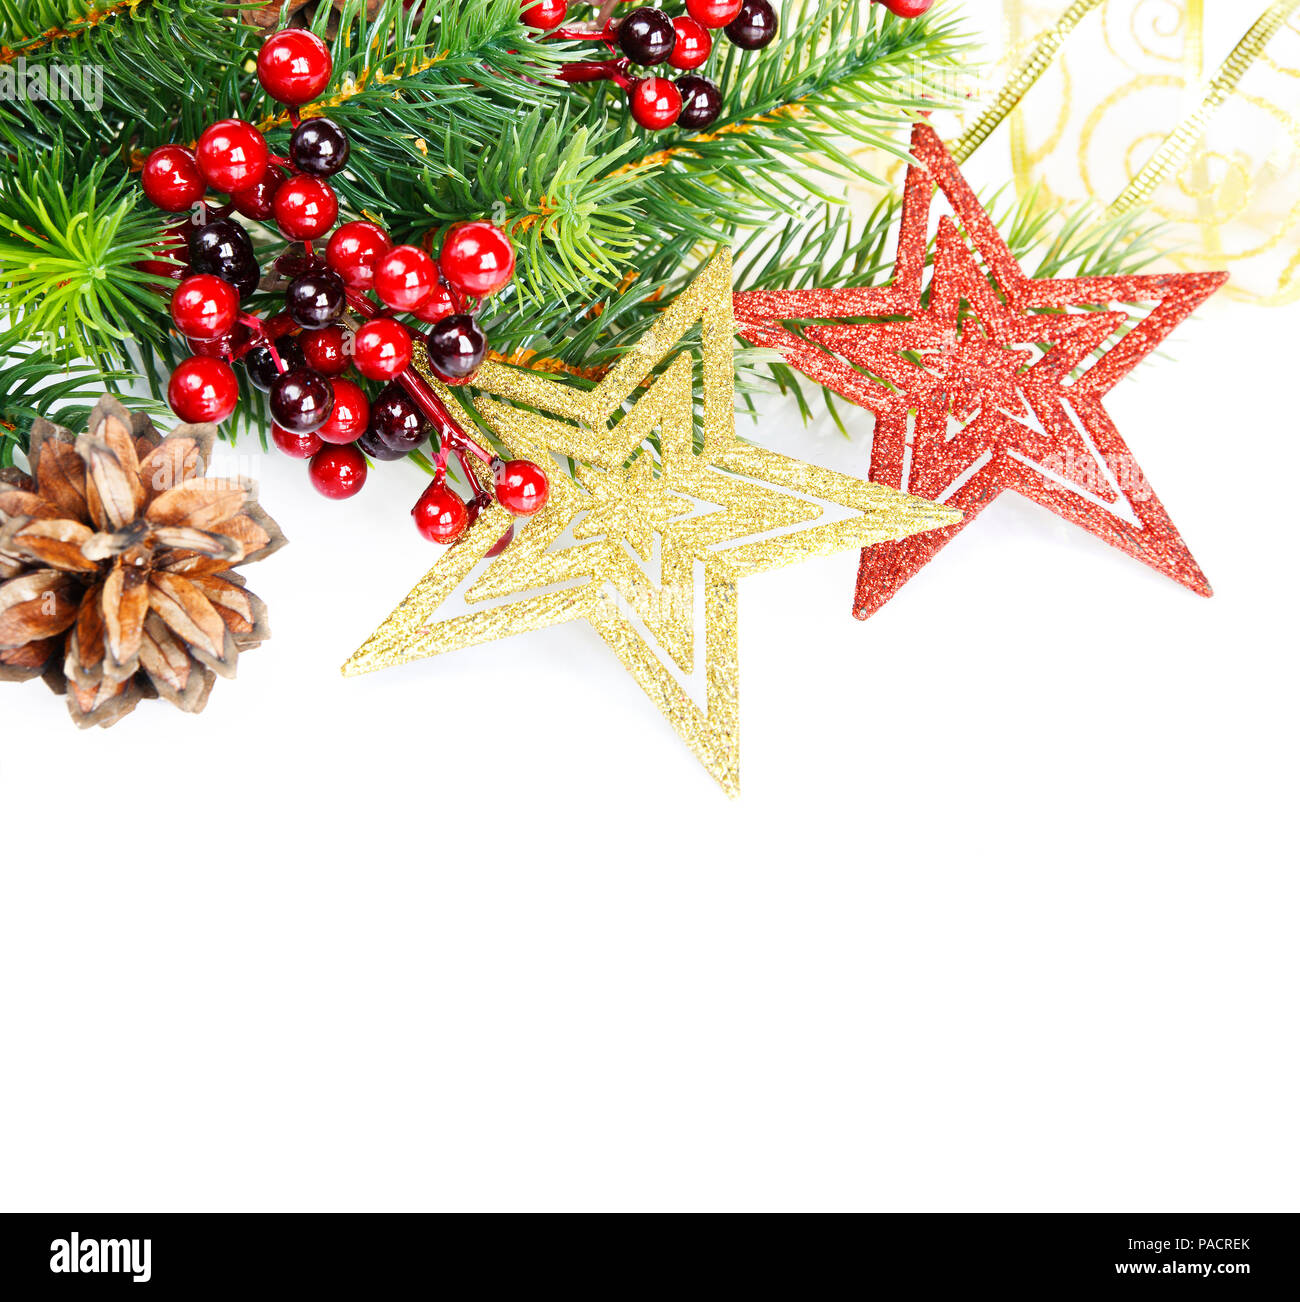 Natale compositionon verde con rami di abete rosso, holly barries, rosso e golder stelle e fir cono isolato su sfondo bianco Foto Stock